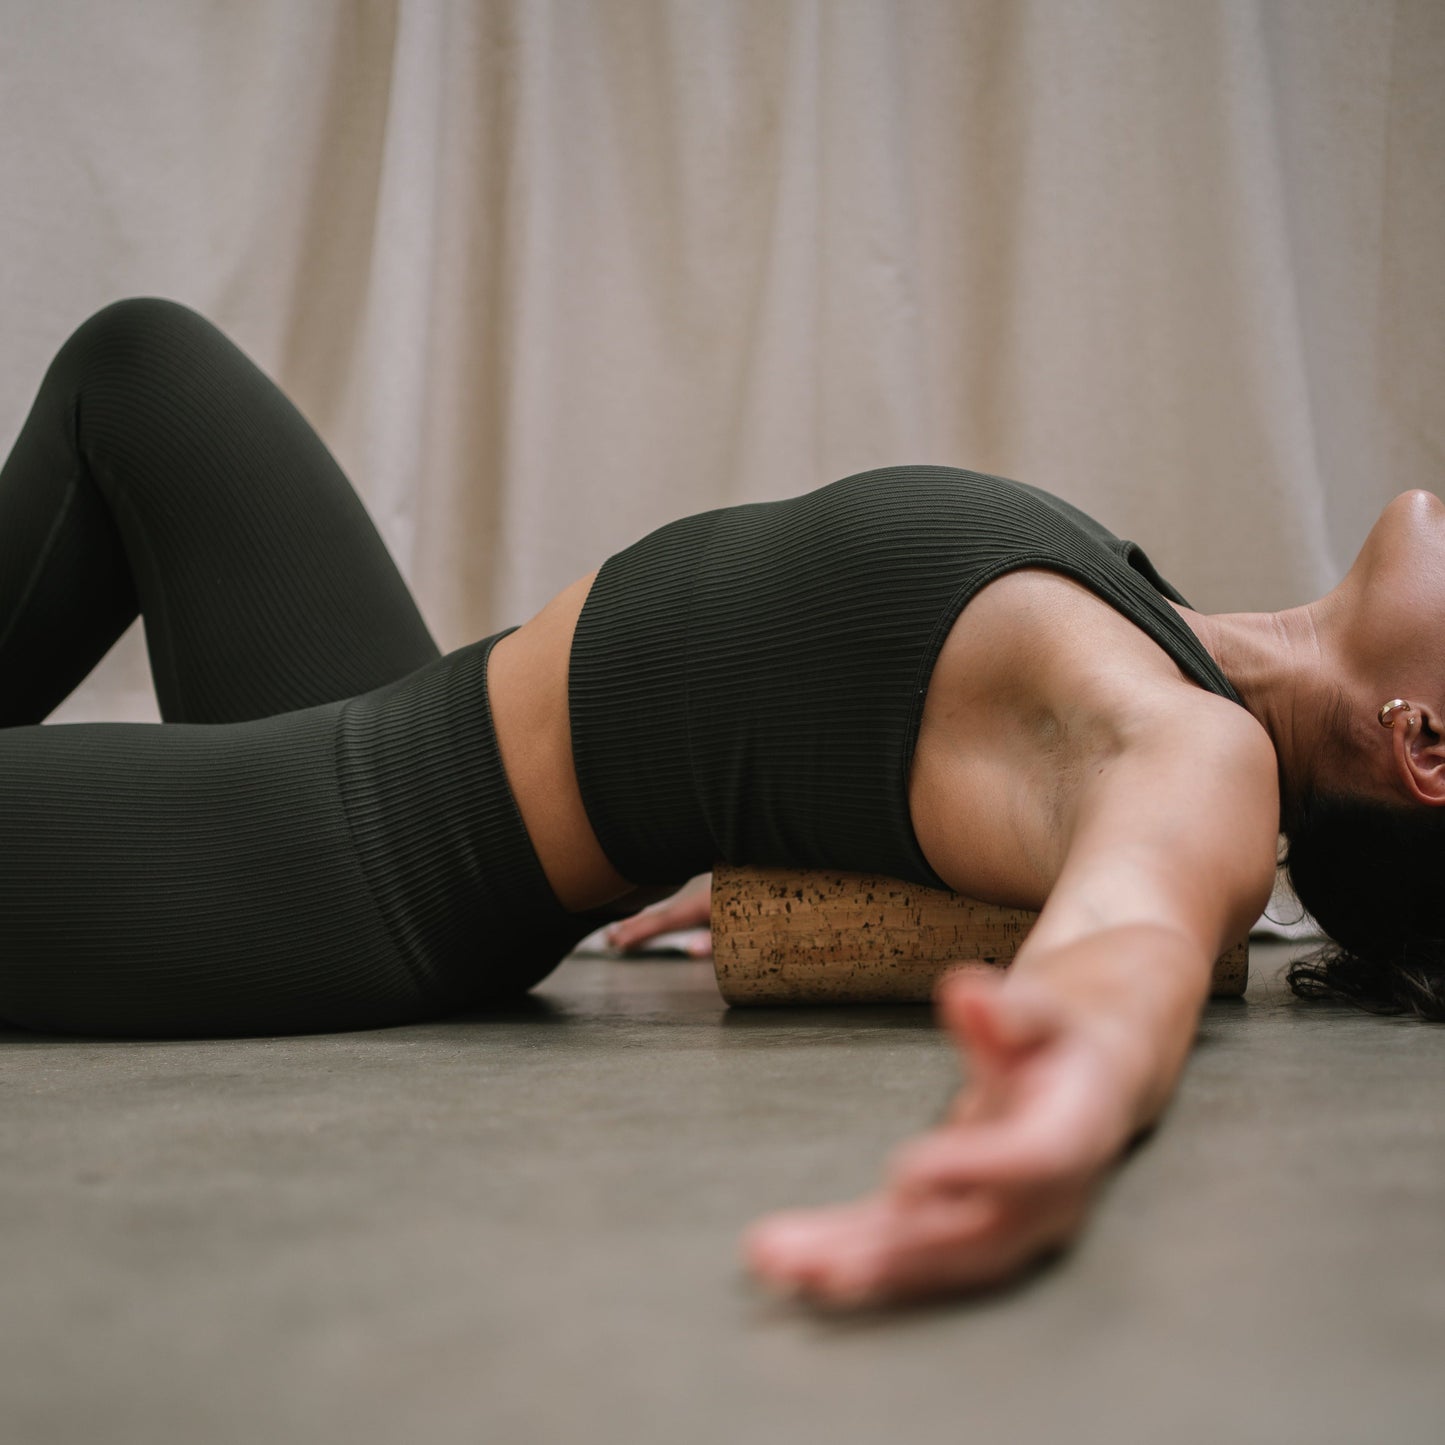 model using a noveme cork roller to massage her back